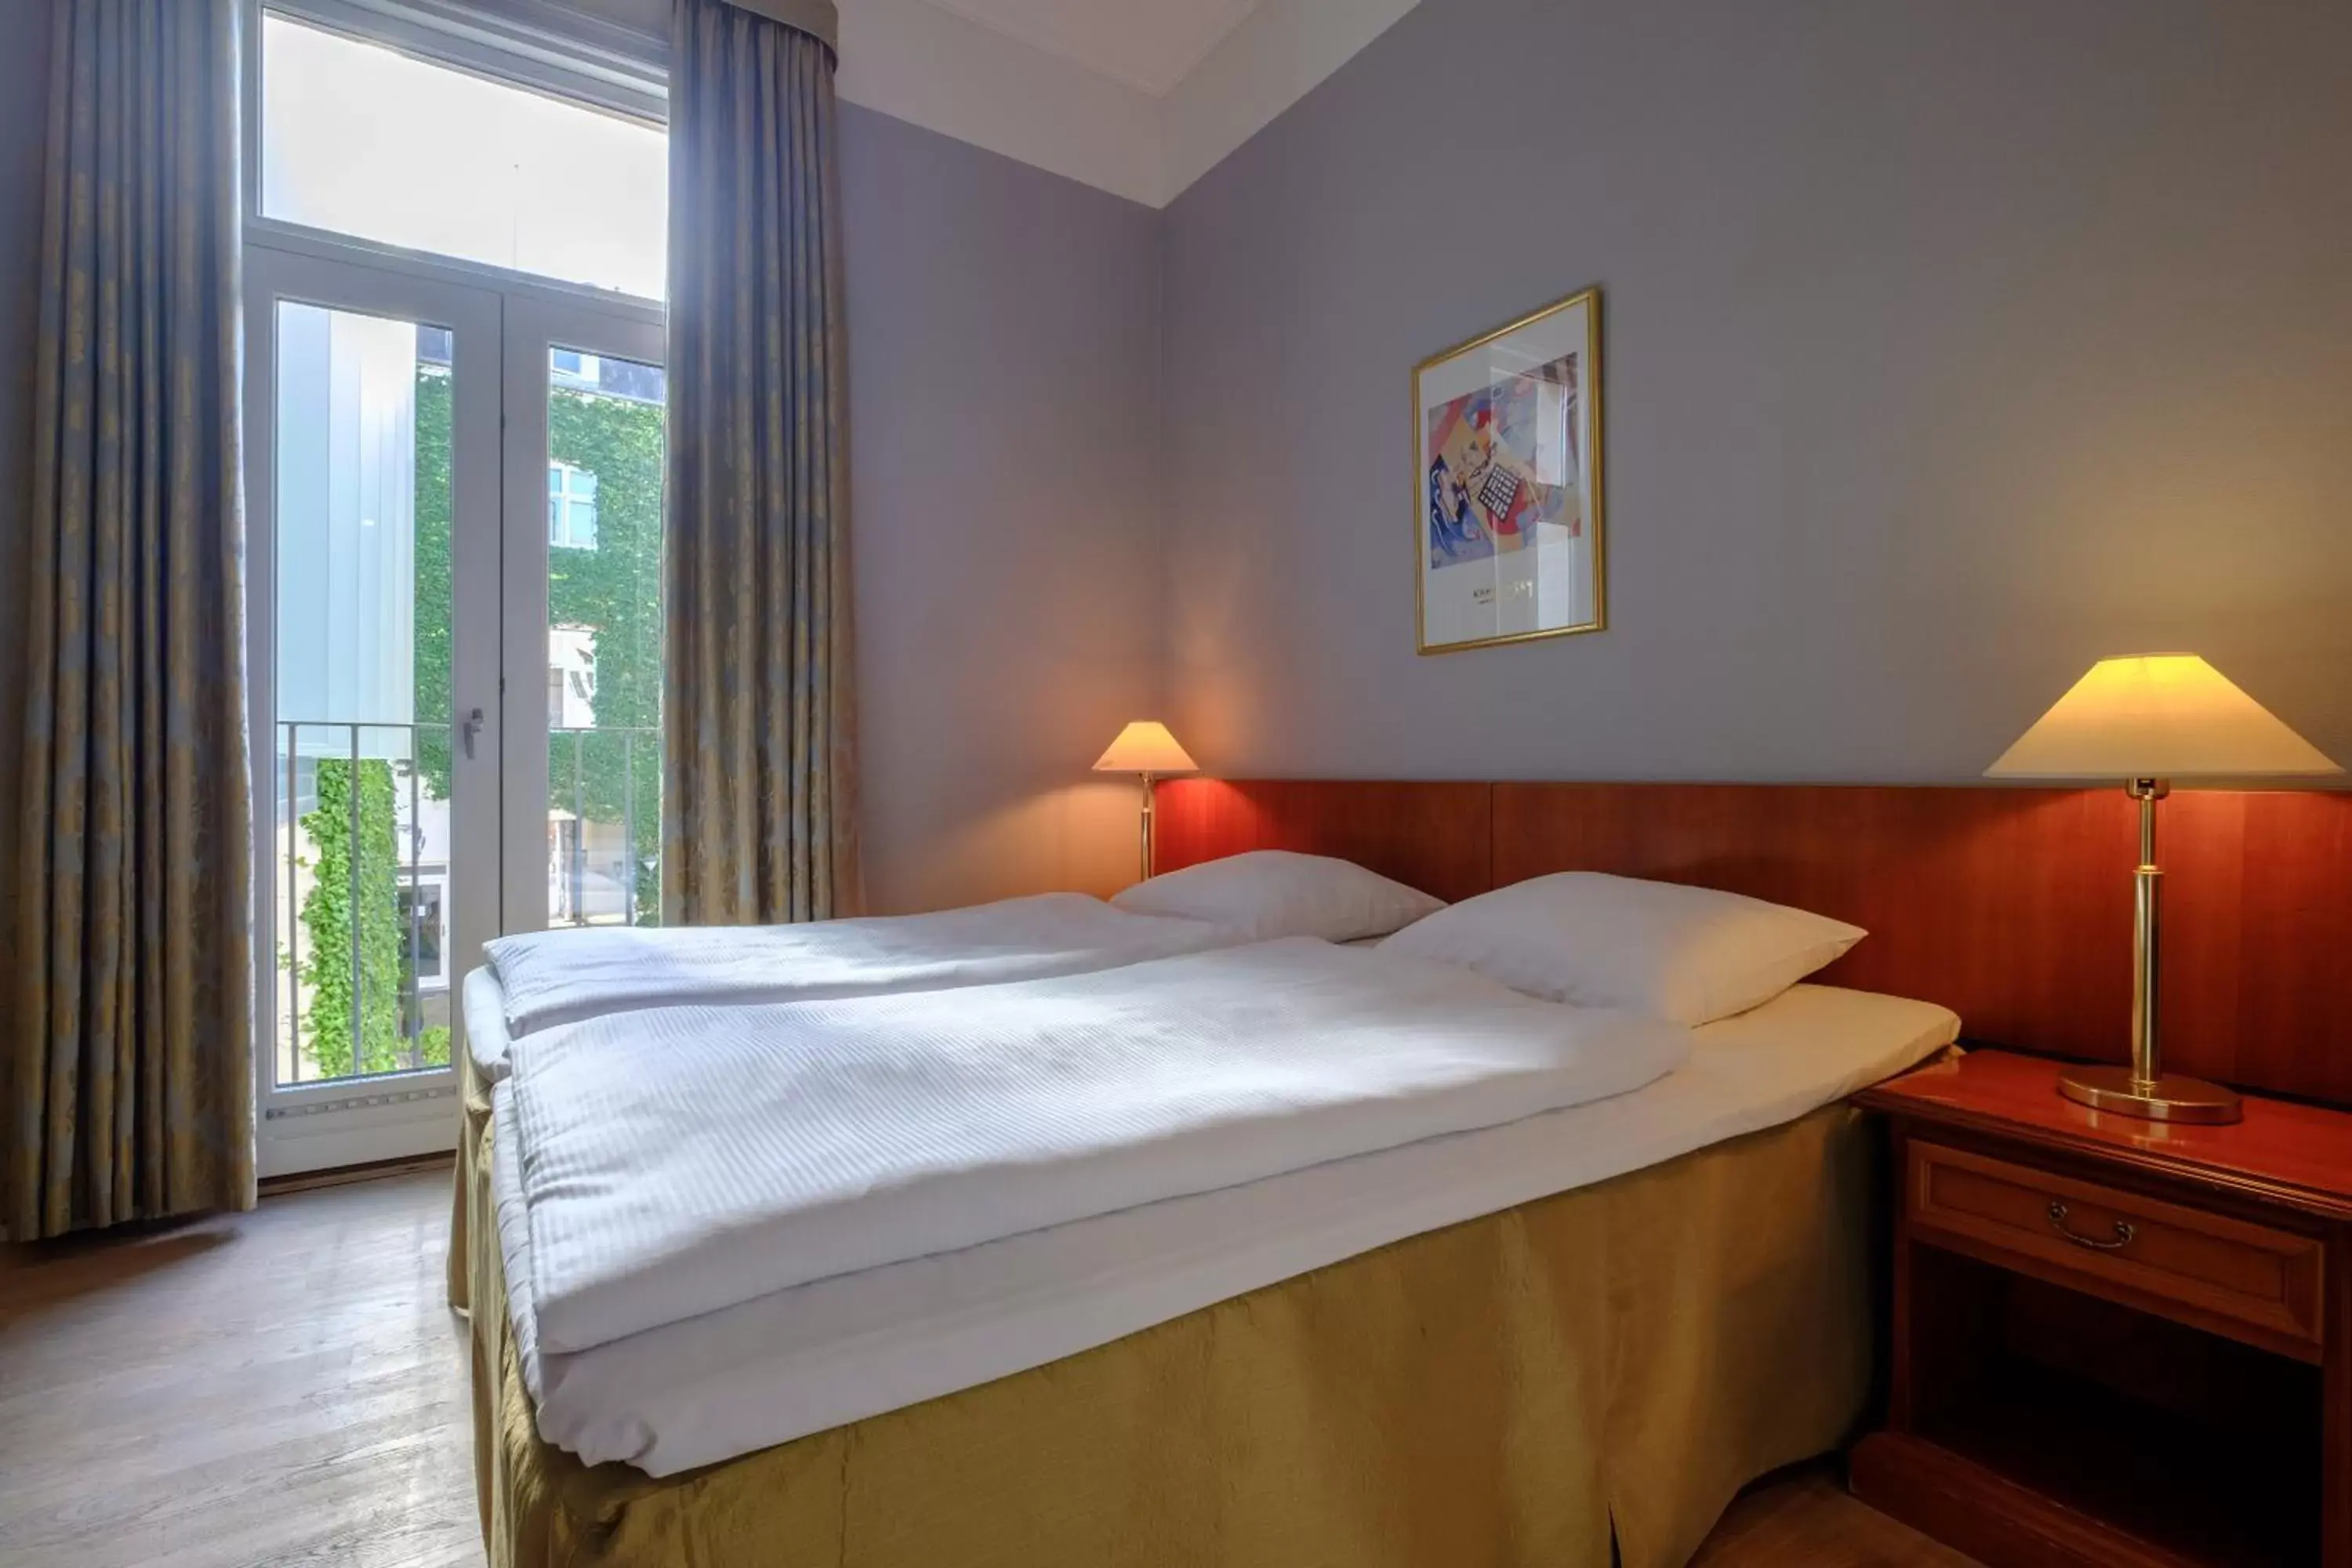 Bed, Room Photo in Zleep Hotel Prindsen Roskilde